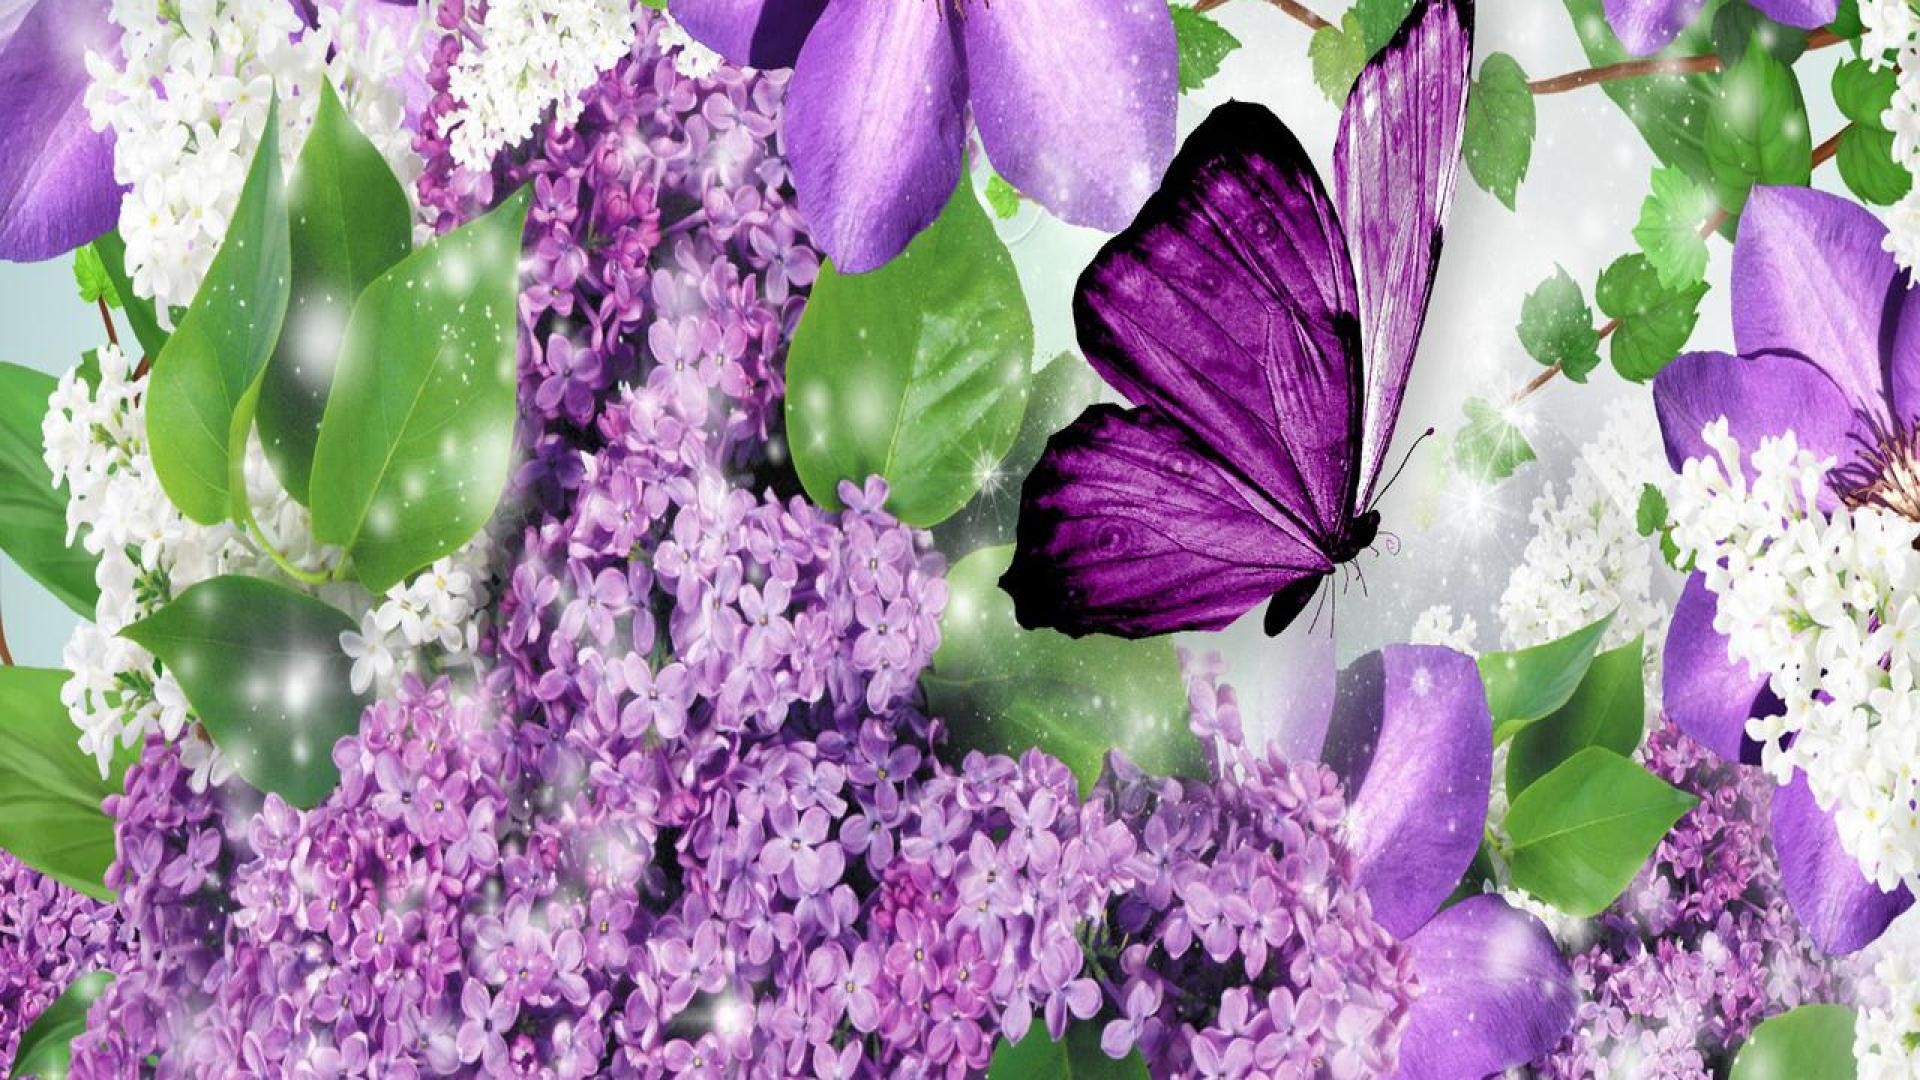 1920x1080 82 best Butterflies Betterfly images on Pinterest | Beautiful ... Beautiful purple  butterfly ...